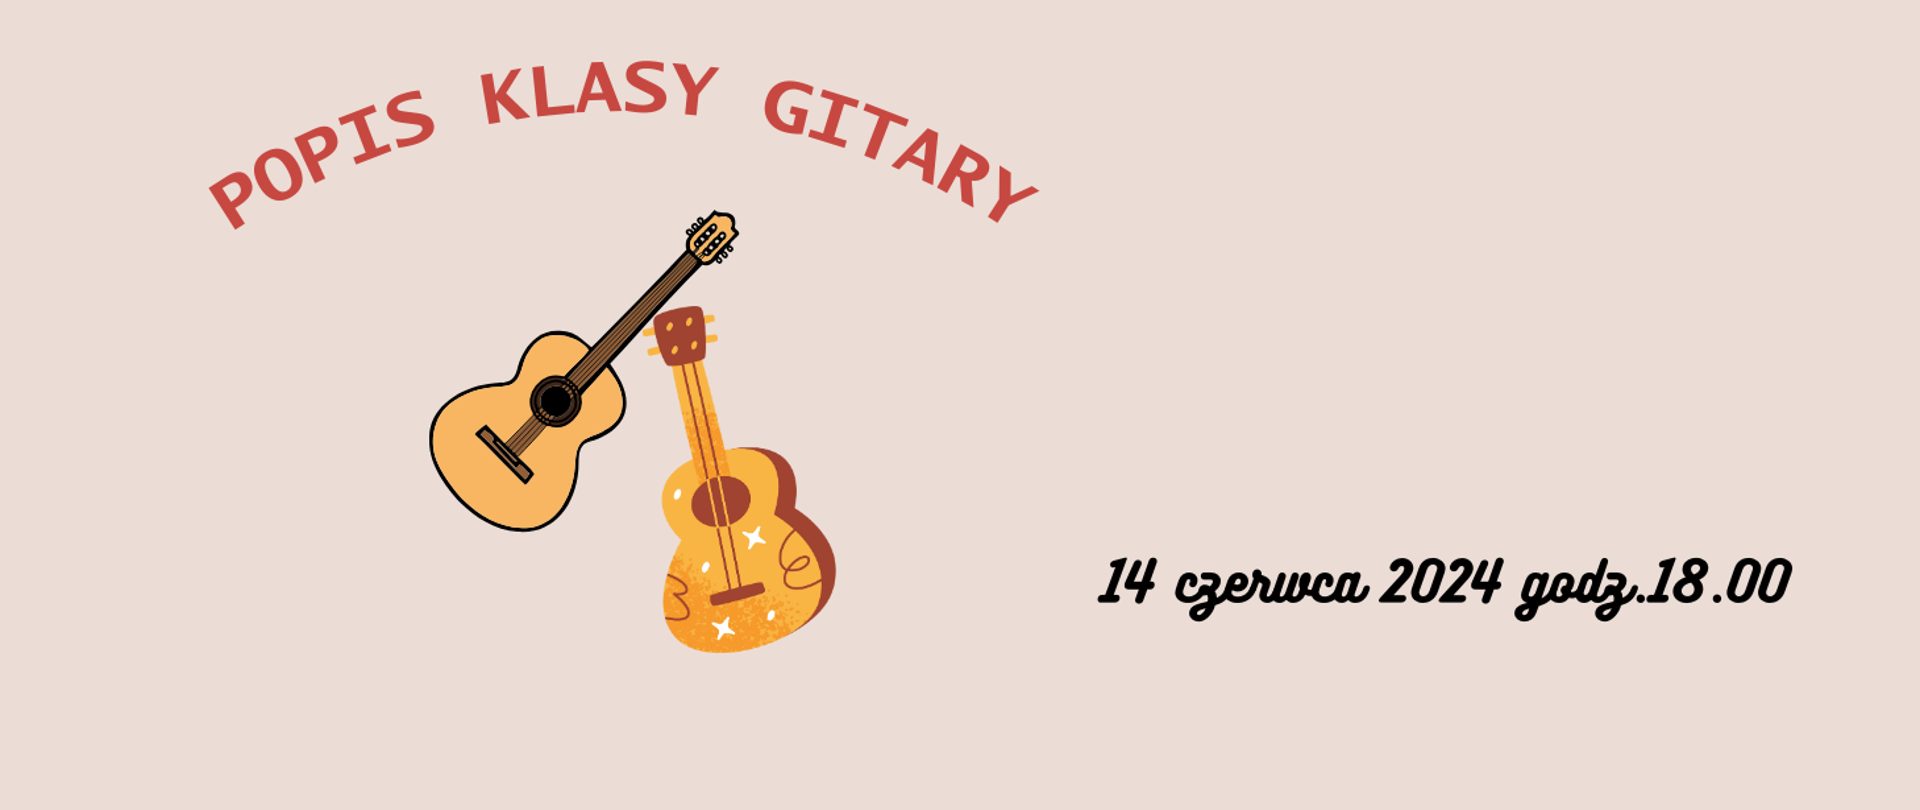 Plakat dwie gitary klasyczne, napis-popis klasy gitary 16 czerwca 2024 godz.18.00